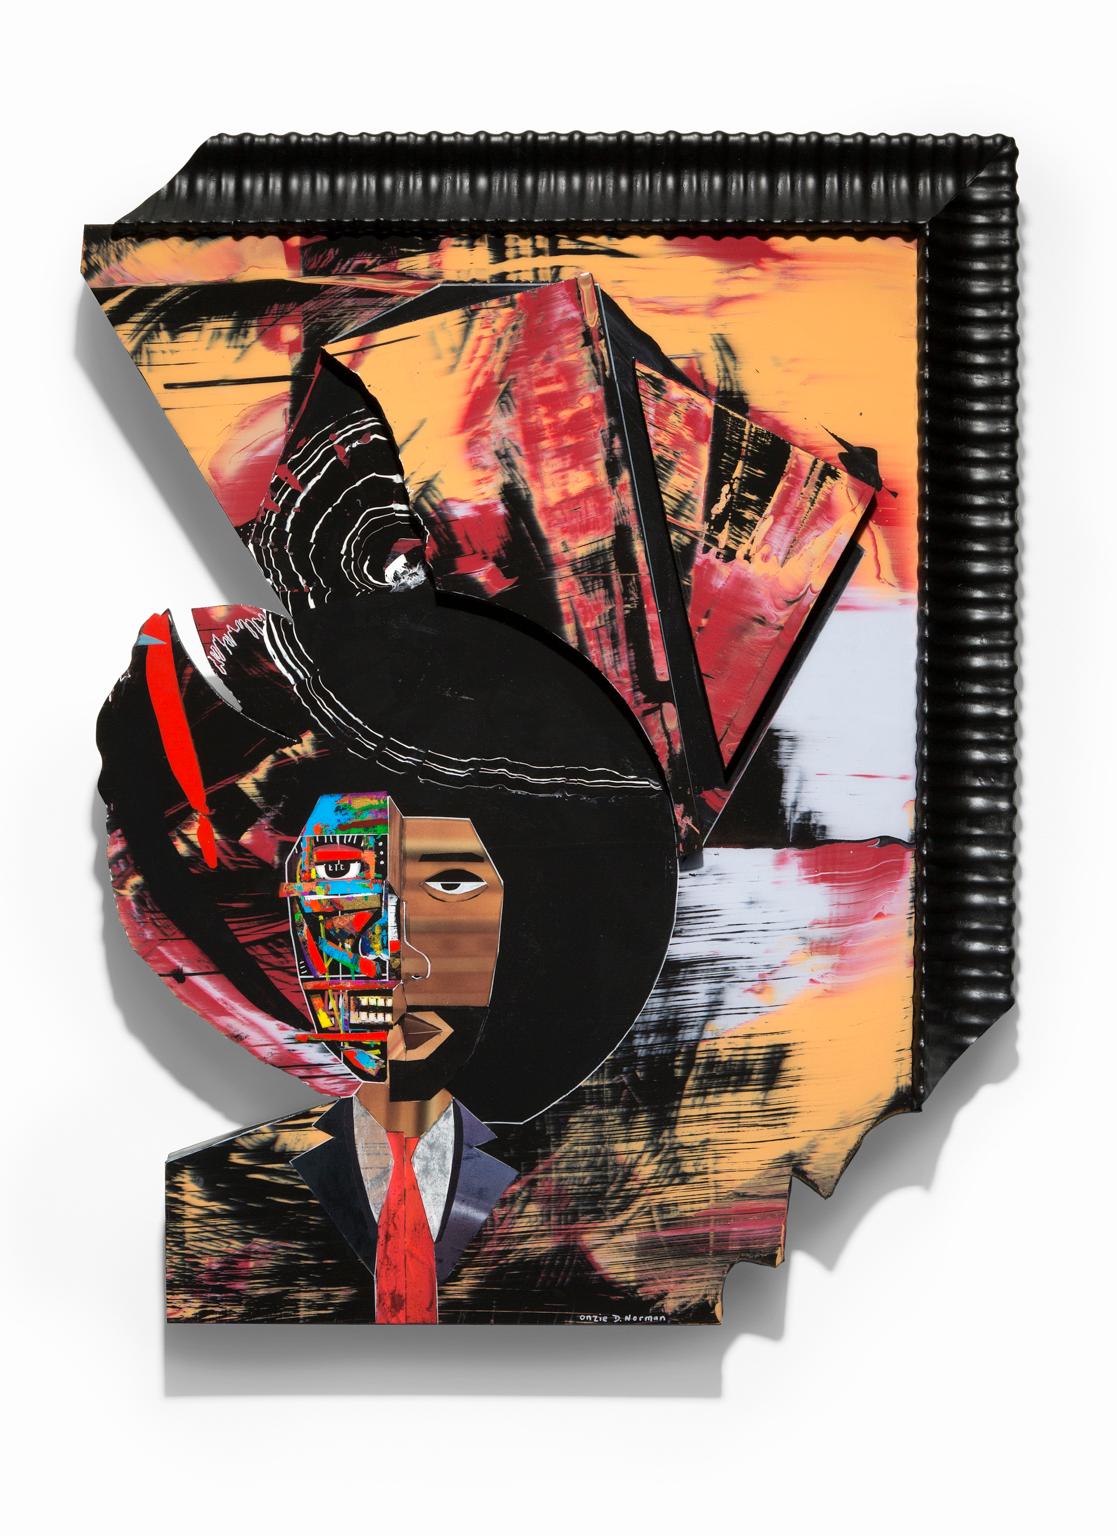 Onzie Norman Figurative Painting – ""Mental Capacity"" Mixed Media, figürliches Bild von Afroamerikanern, ikonische Farbe